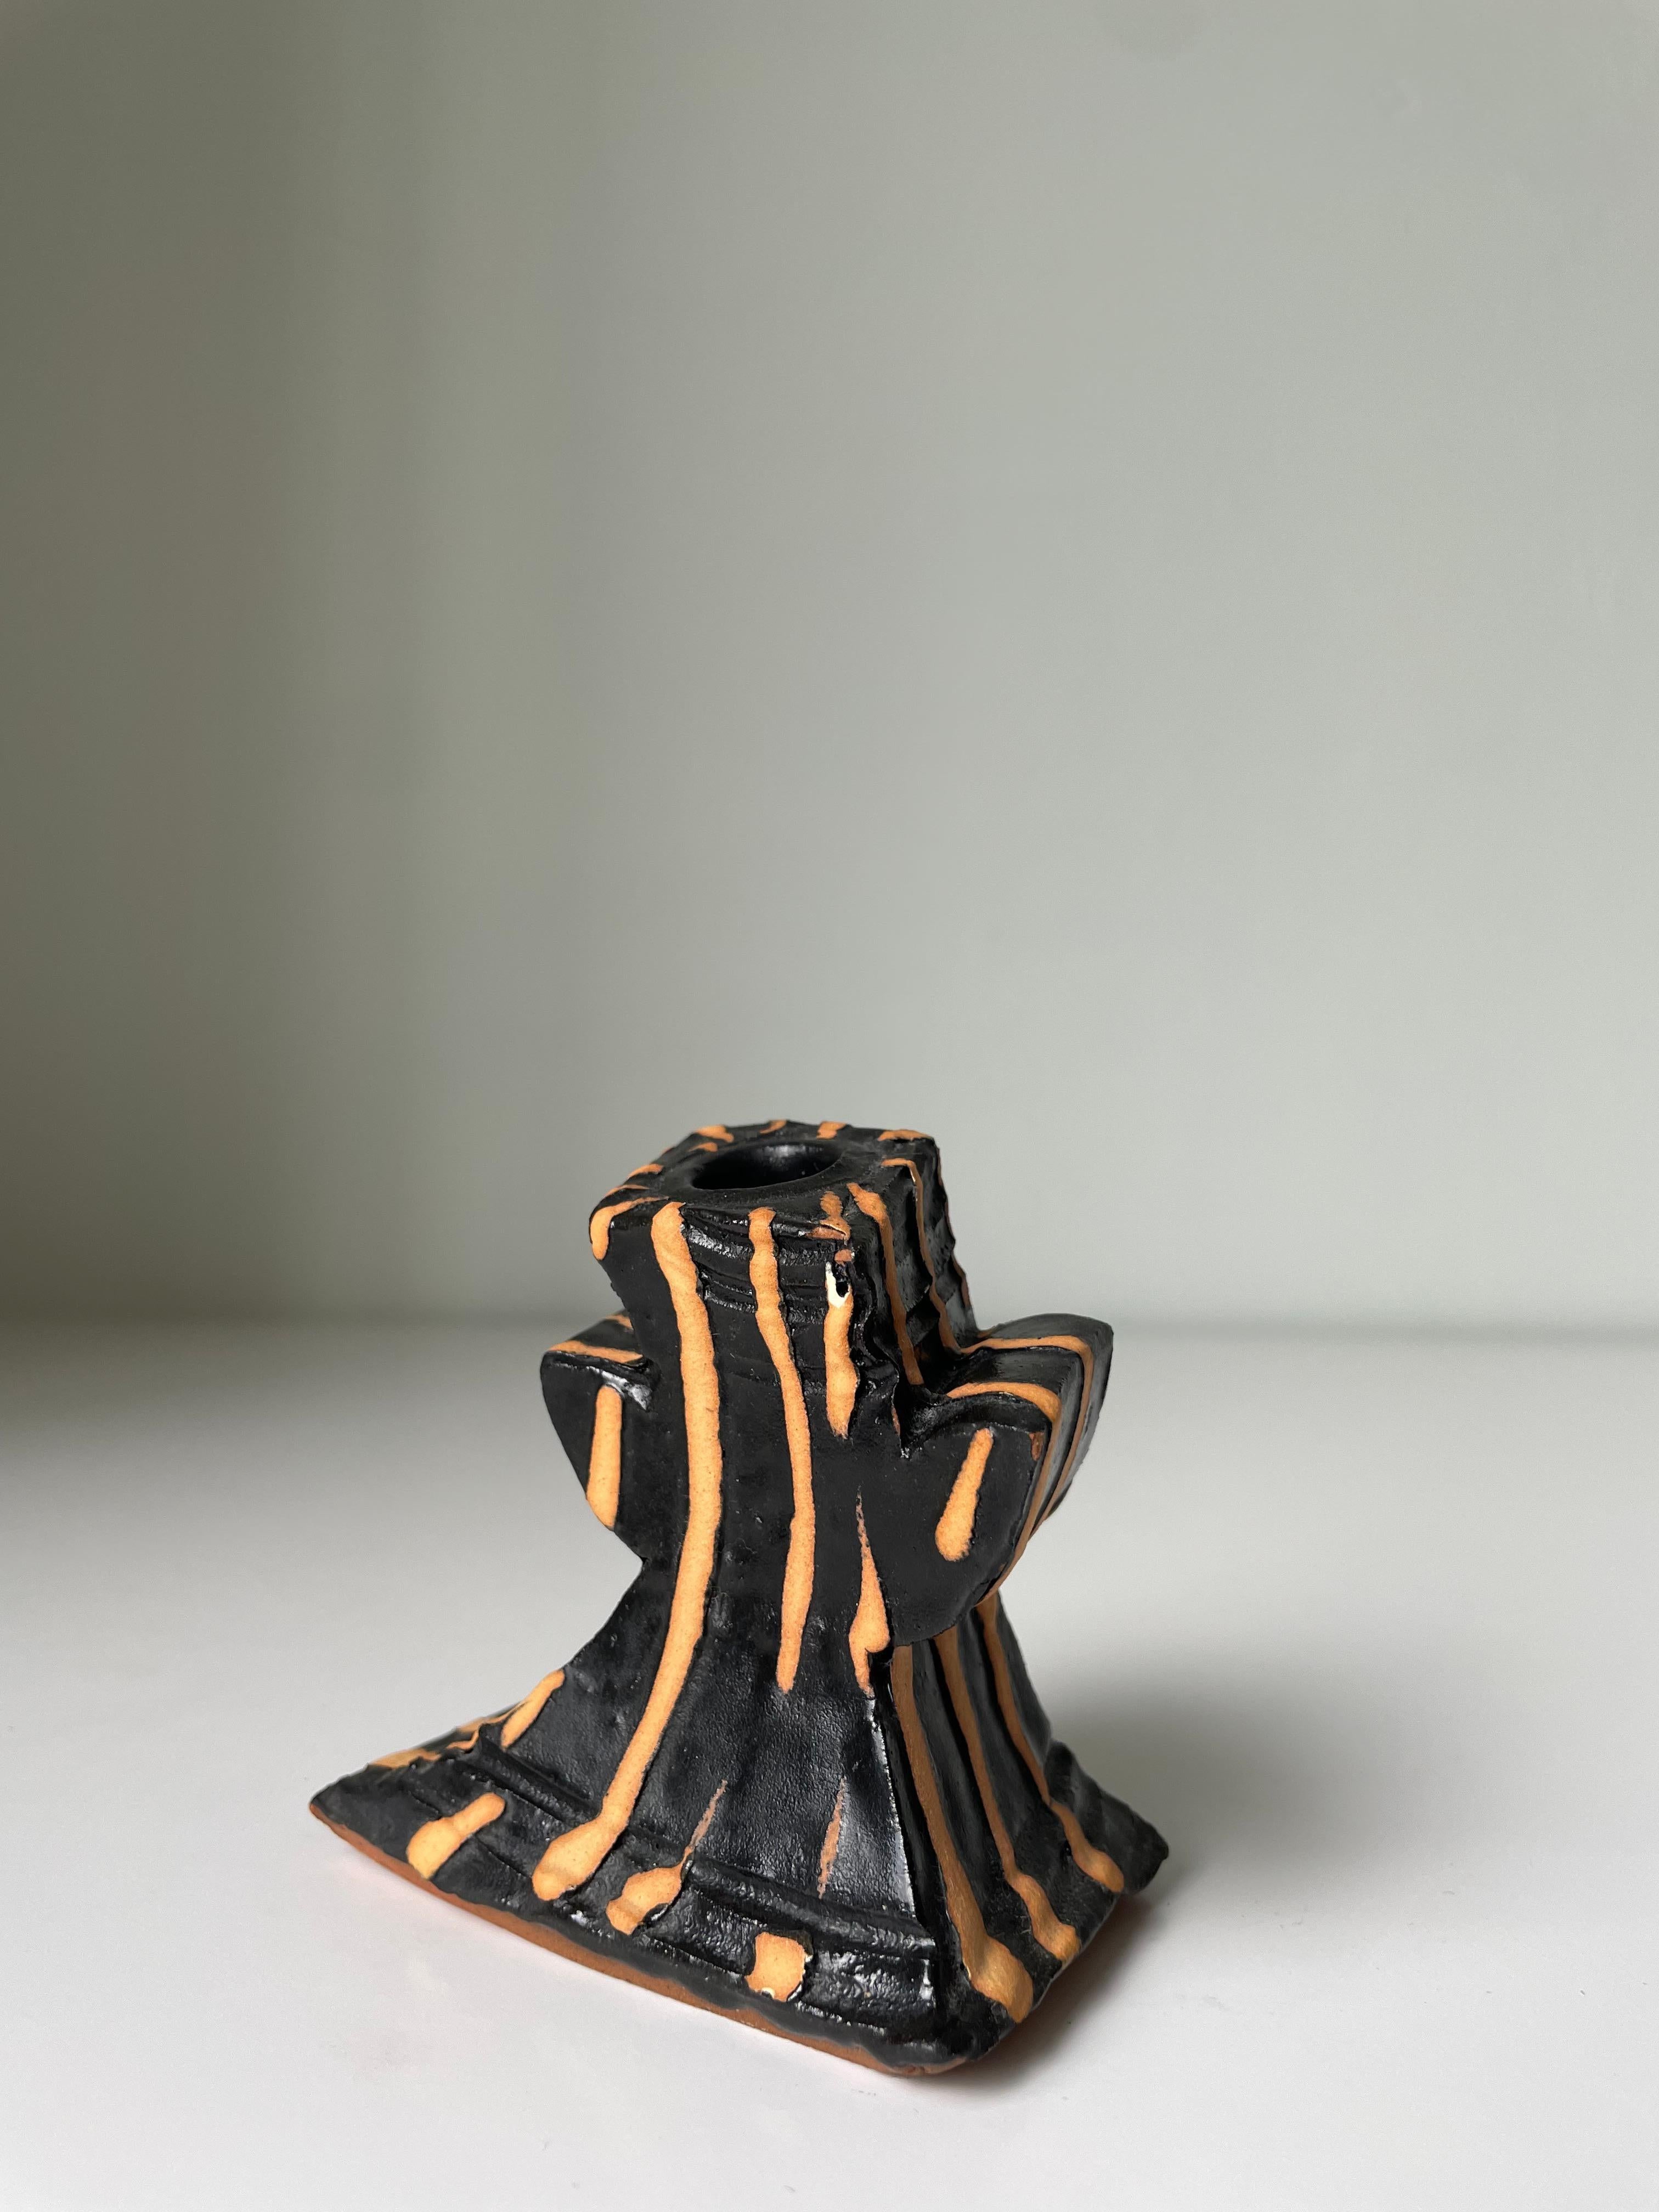 Richard Parker Sculptural Ceramic Art Candle Holder, New Zealand, ca 2003 For Sale 5